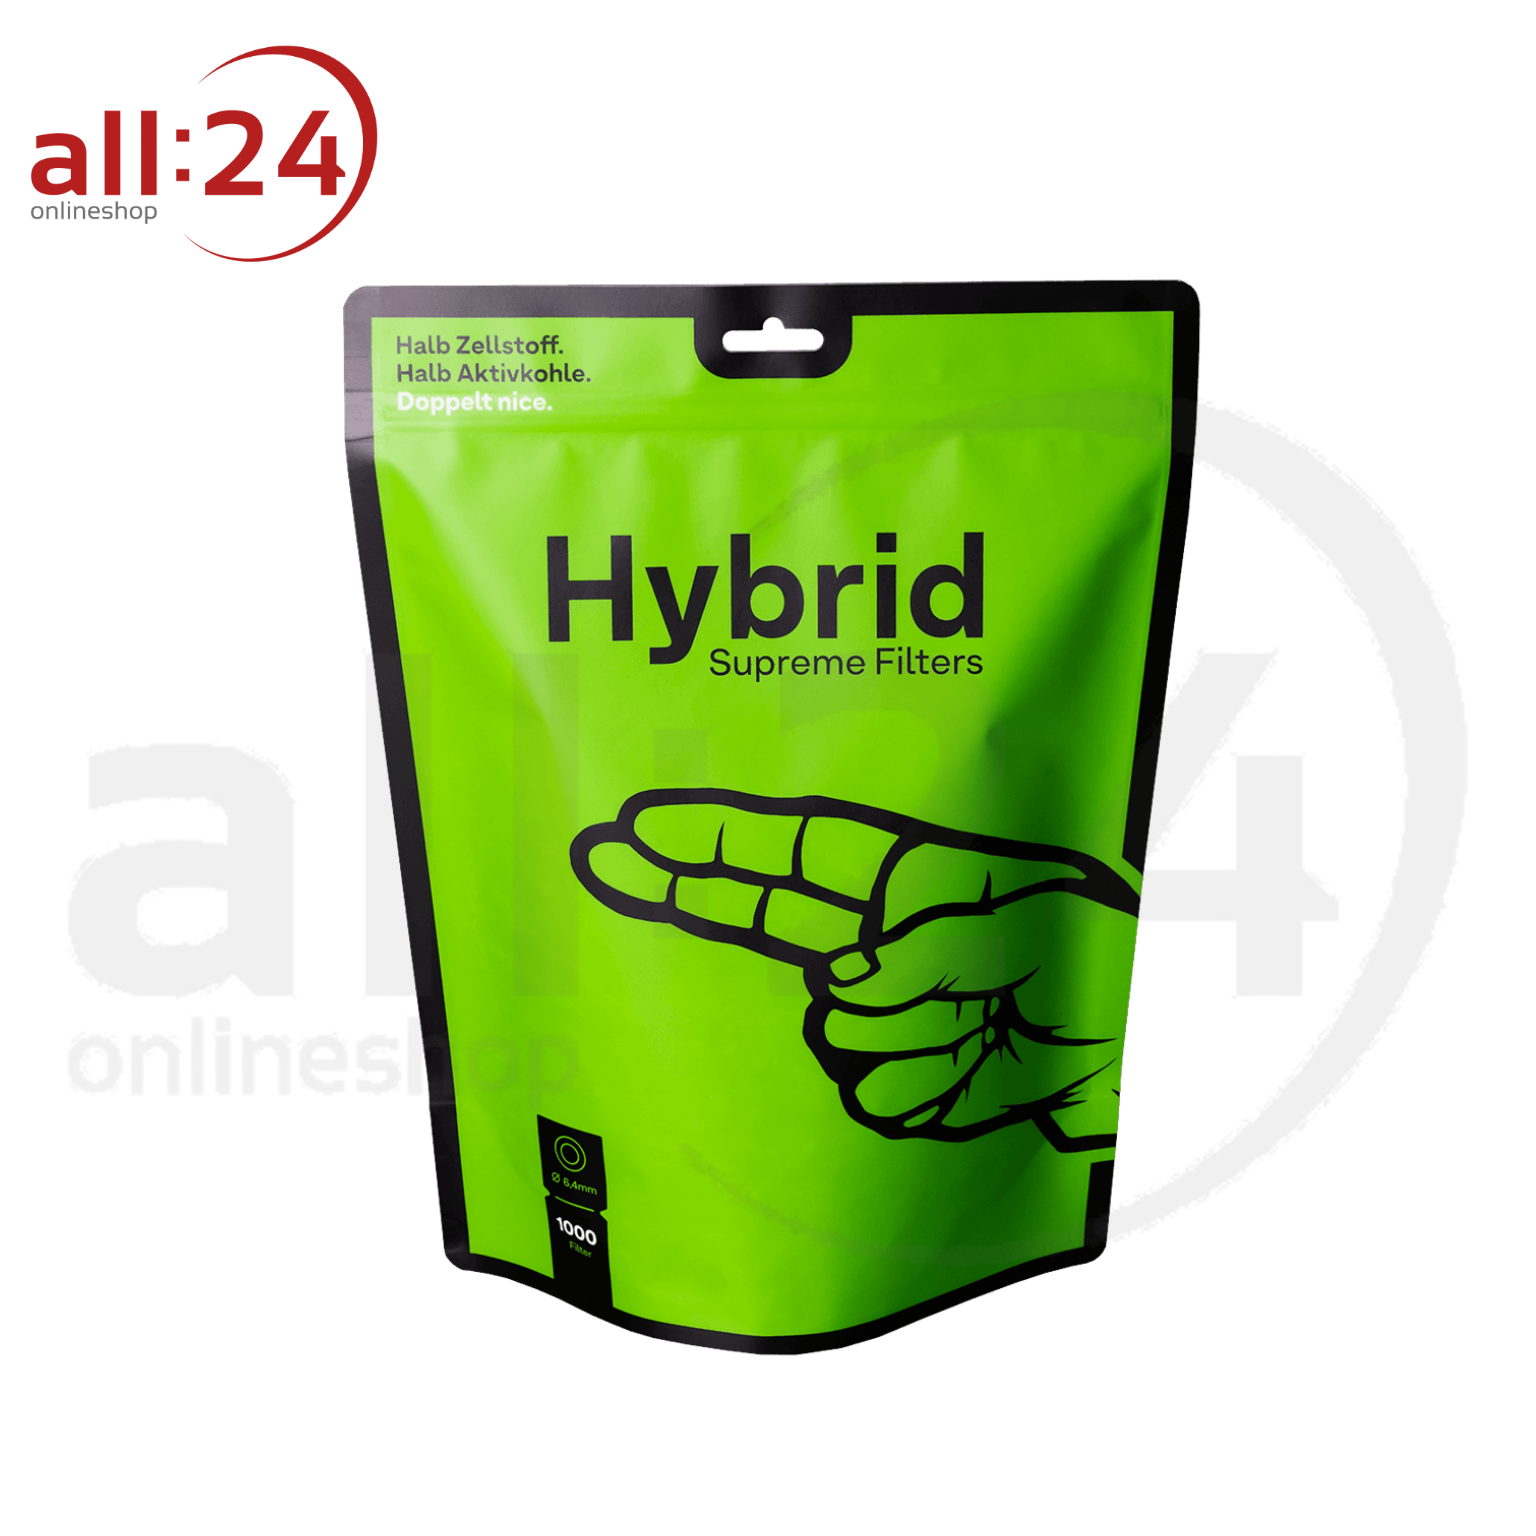 Hybrid Supreme Filter: halb Aktivkohle und Zellstoff - 1000 Stück 